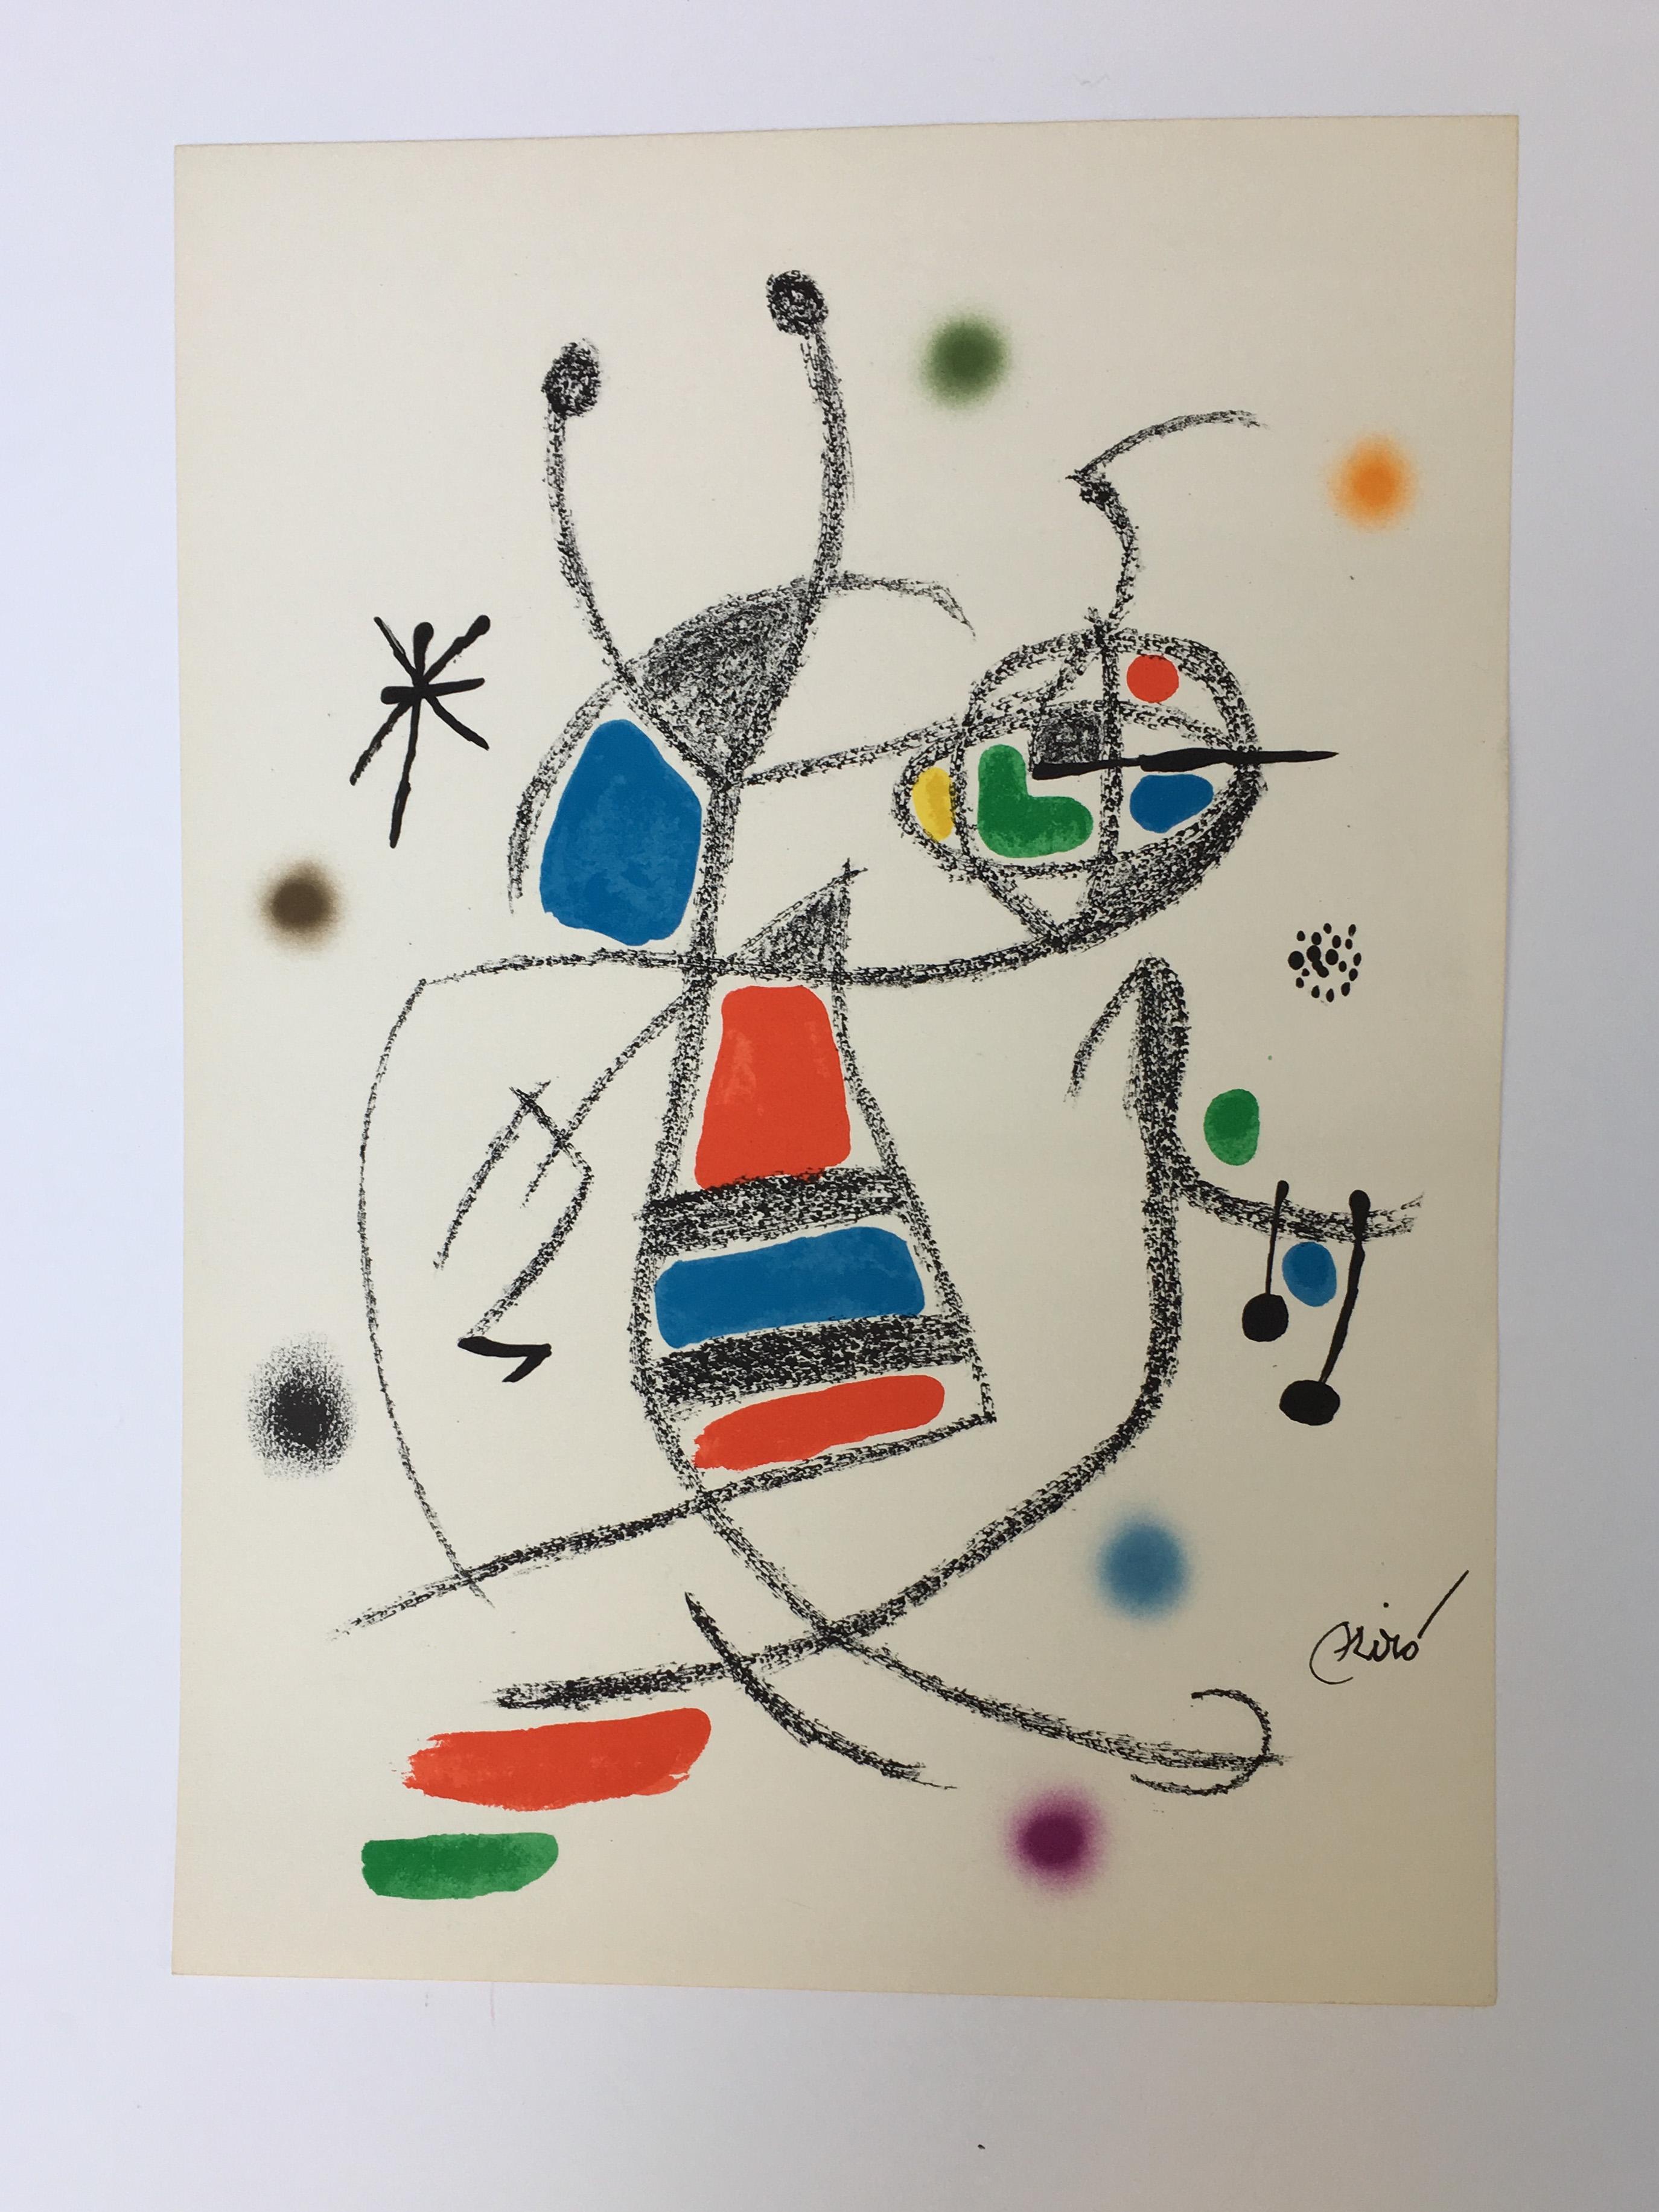 Maravillas con Variaciones Acrosticas 7 - Print by Joan Miró